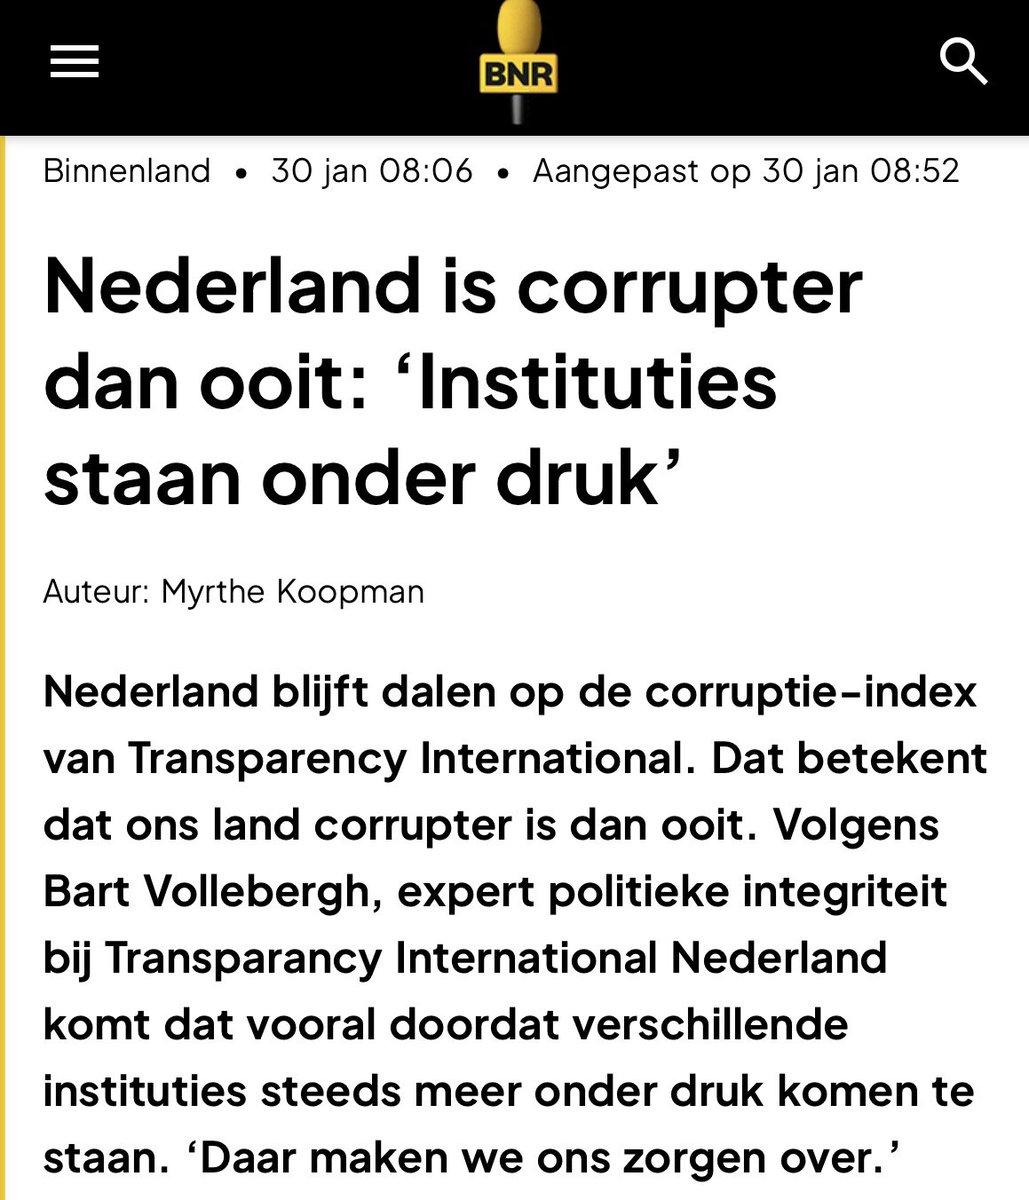 Schaal 1 op 10! ⚖️ Hoe corrupt vind jij Nederland?! 🇳🇱